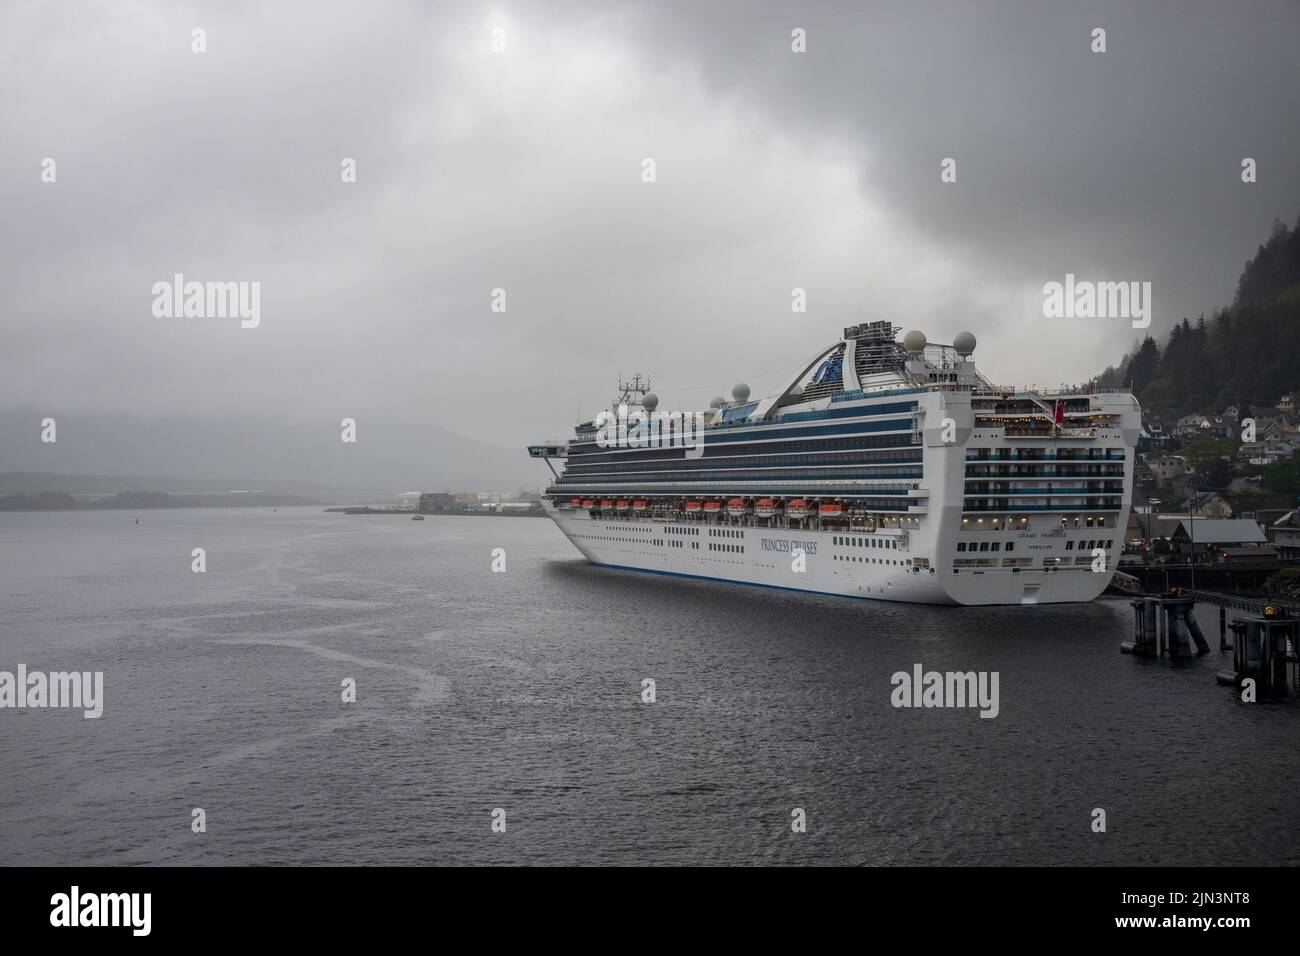 Ketchikan, AK - 10 juin 2022 : bateau de croisière Grand Princess amarré à Ketchikan en Alaska par un jour pluvieux typique Banque D'Images